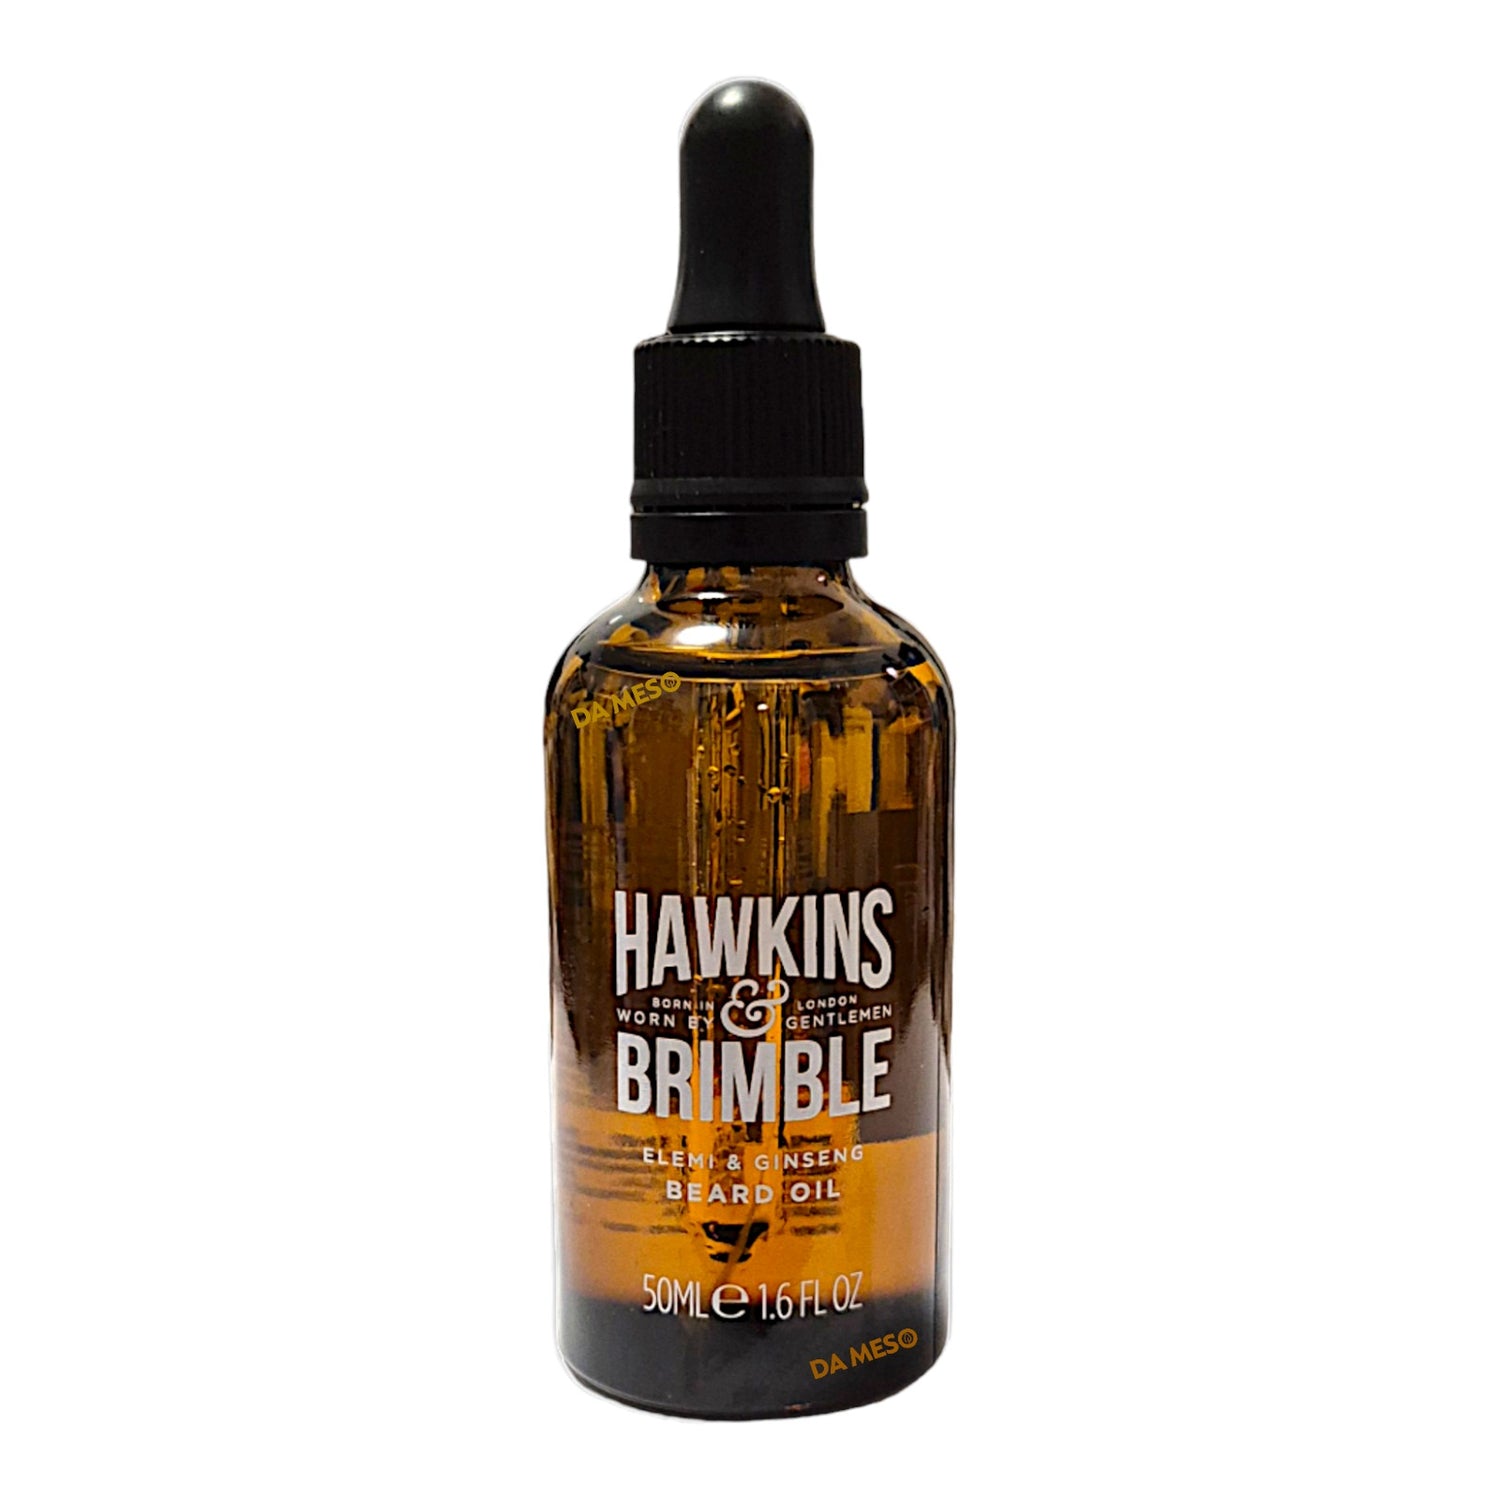 Hawkins & Brimble Bartöl Stärkt und Pflegt das Wachstum 50ml